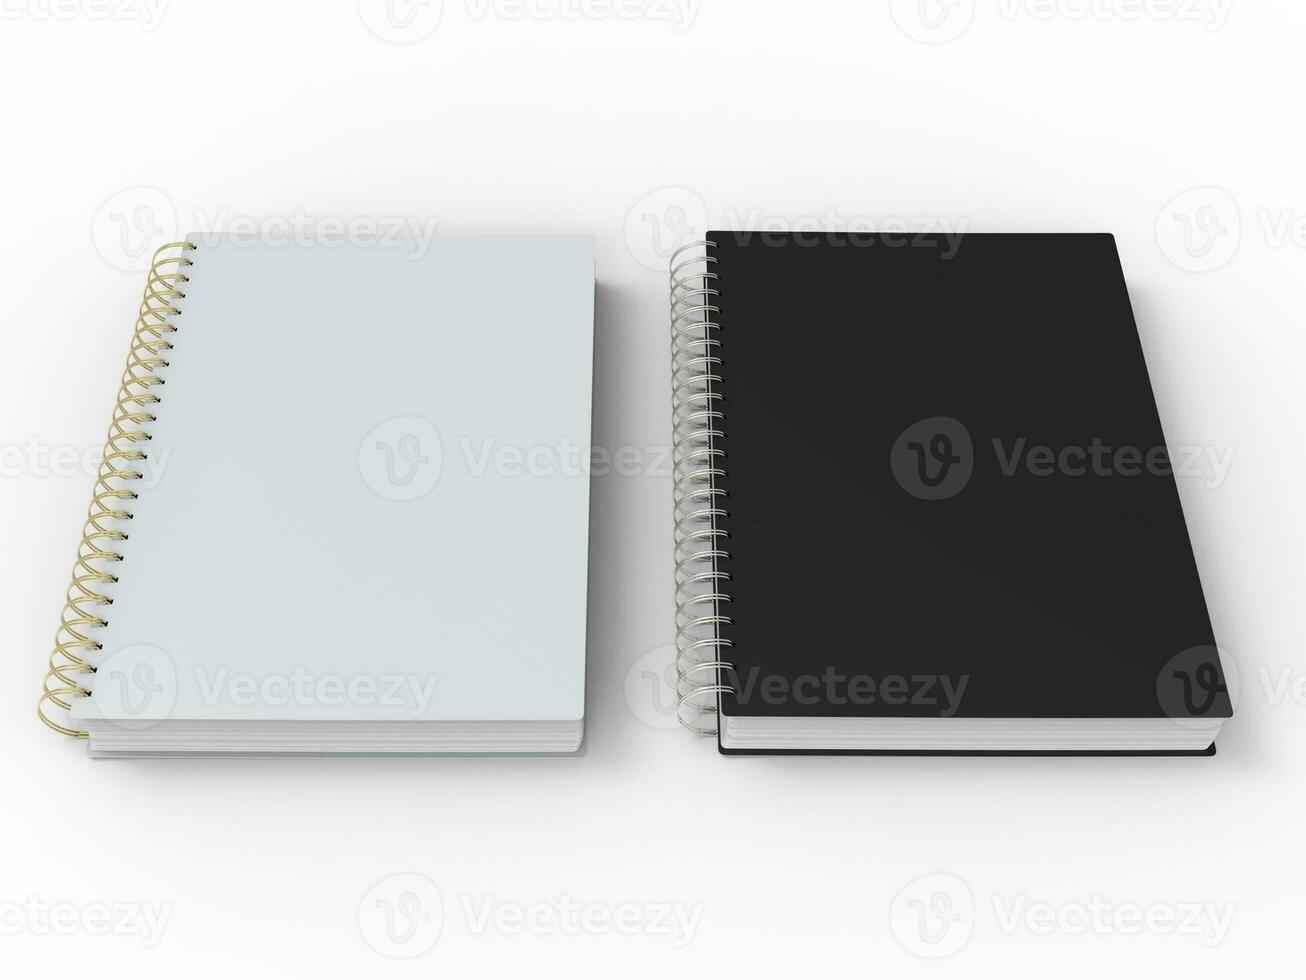 Preto e branco cadernos com espiral obrigatório foto